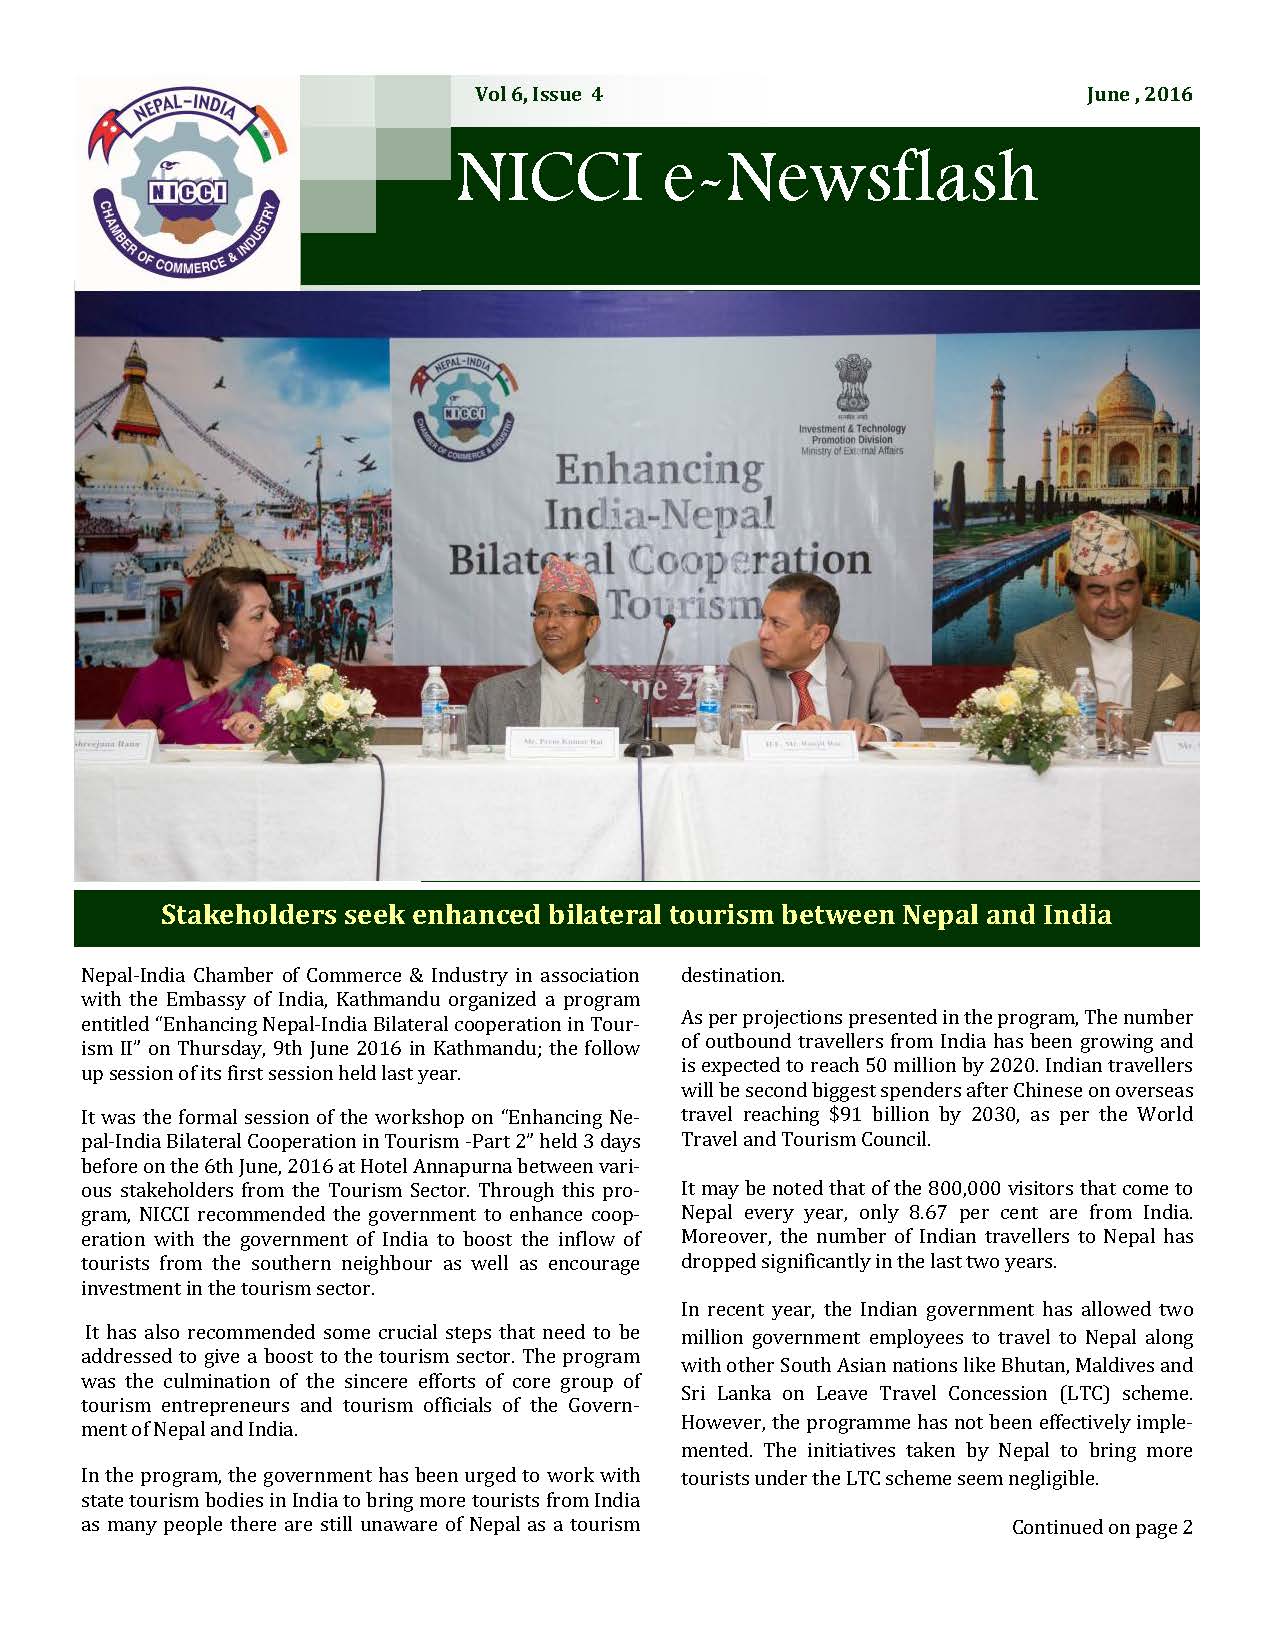 NICCI E-News Flash, June Issue